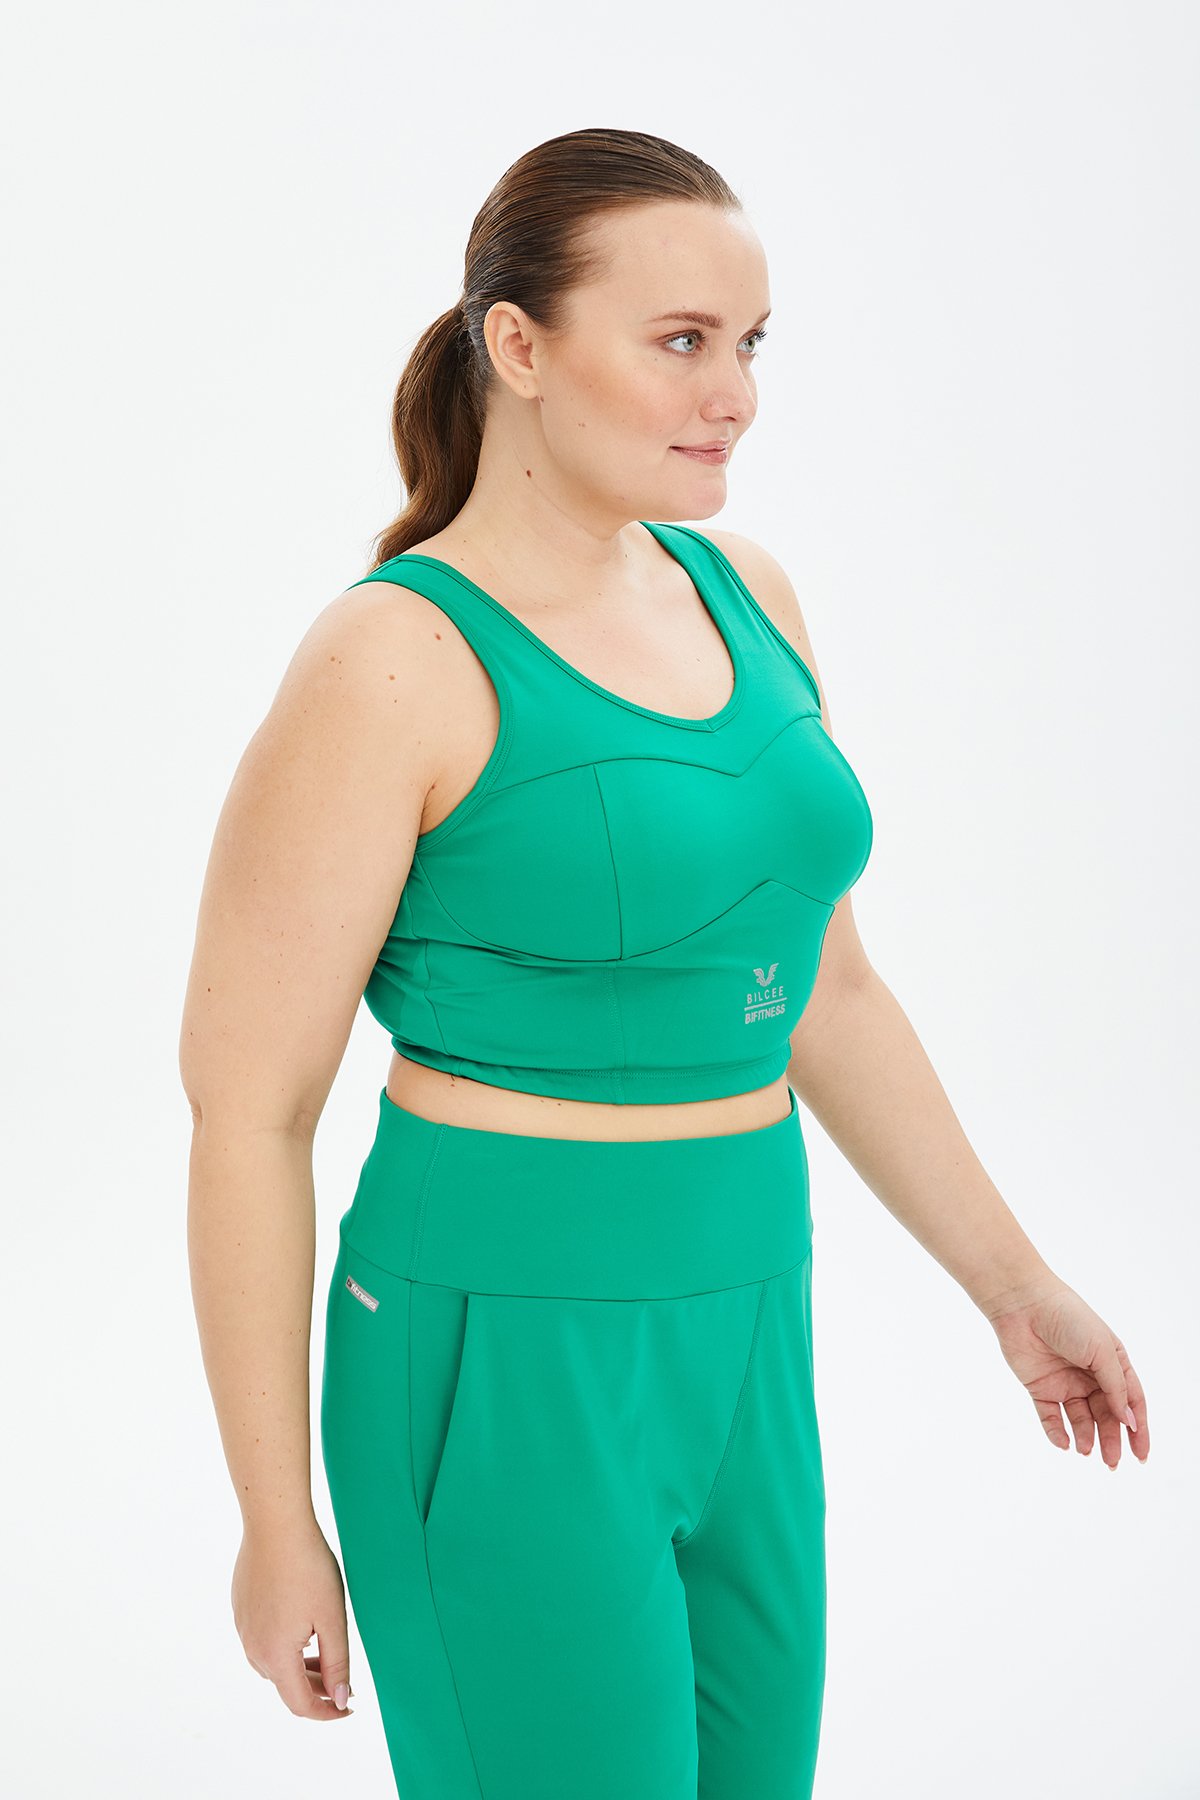 Kadın Yeşil Fitness-Antrenman Spor Fashion Crop Top Toparlayıcı Bra Sporcu Sütyeni Büstiyer 0604 - 13